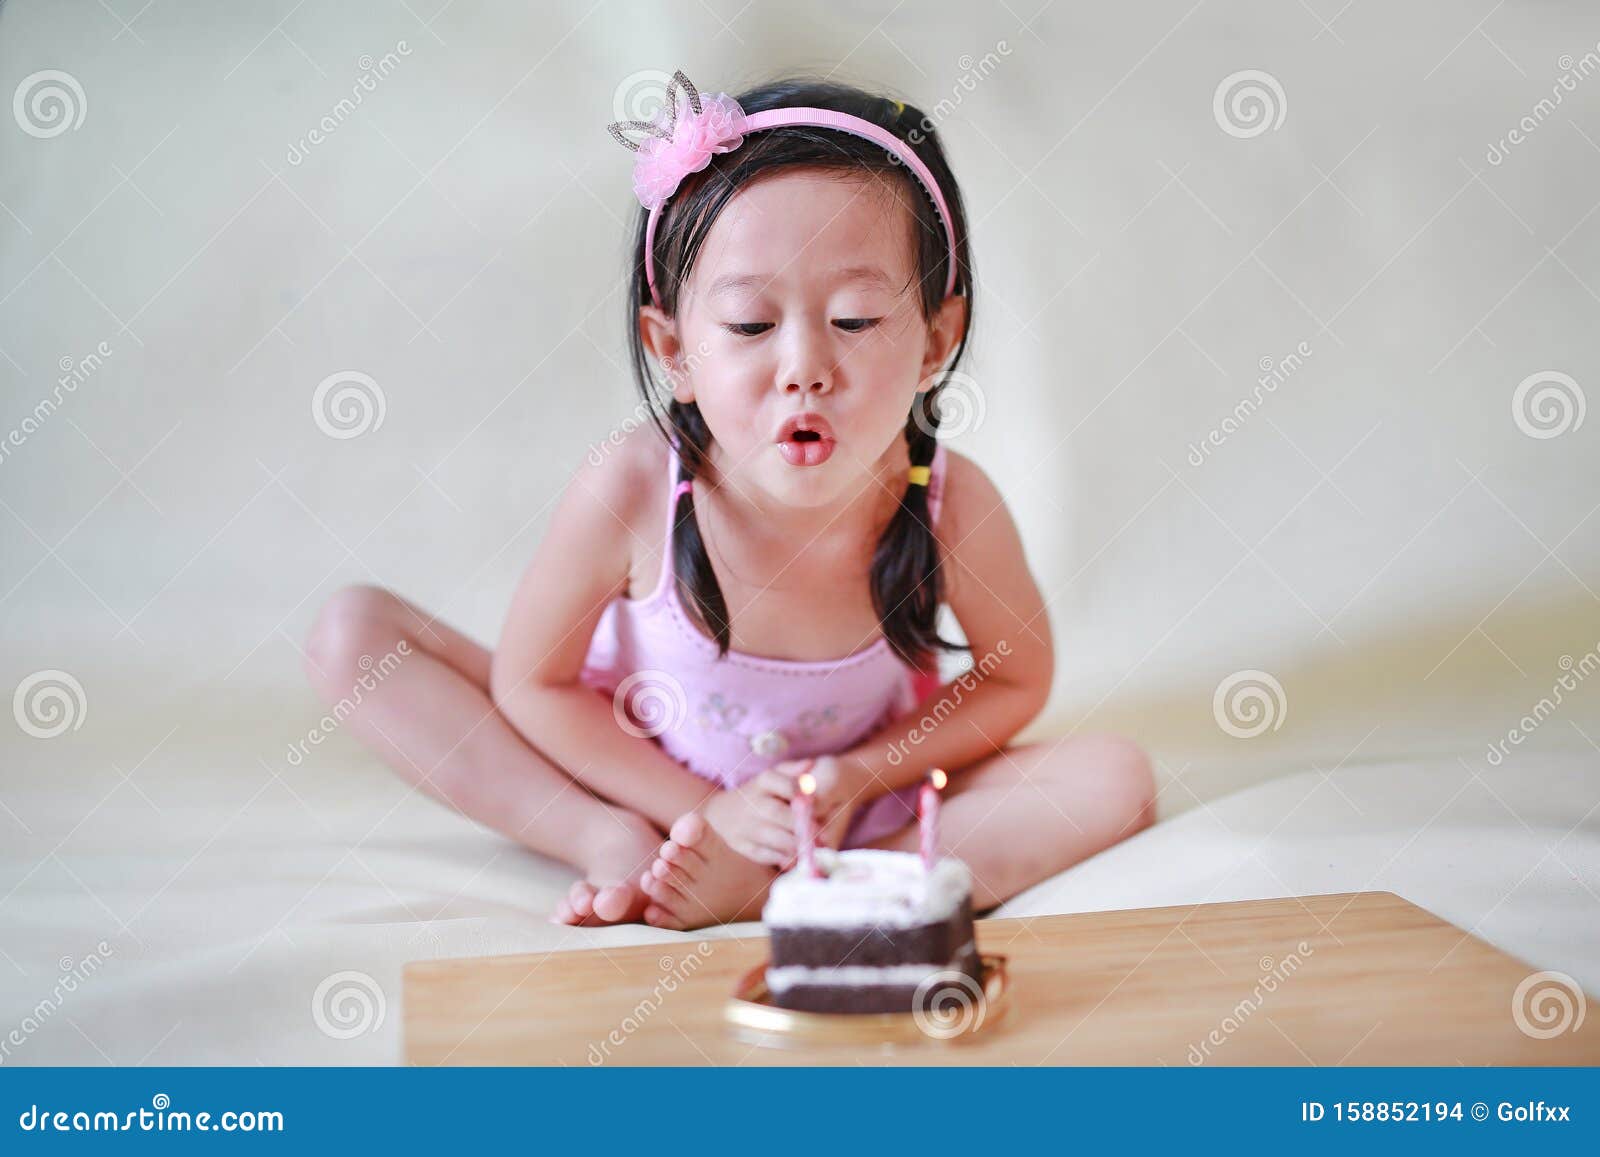 Petite Fille Mignonne Qui Souffle Des Petites Bougies D Anniversaire Enfant De 2 Ans Celebrant Sa Fete Photo Stock Image Du Enfant Petite